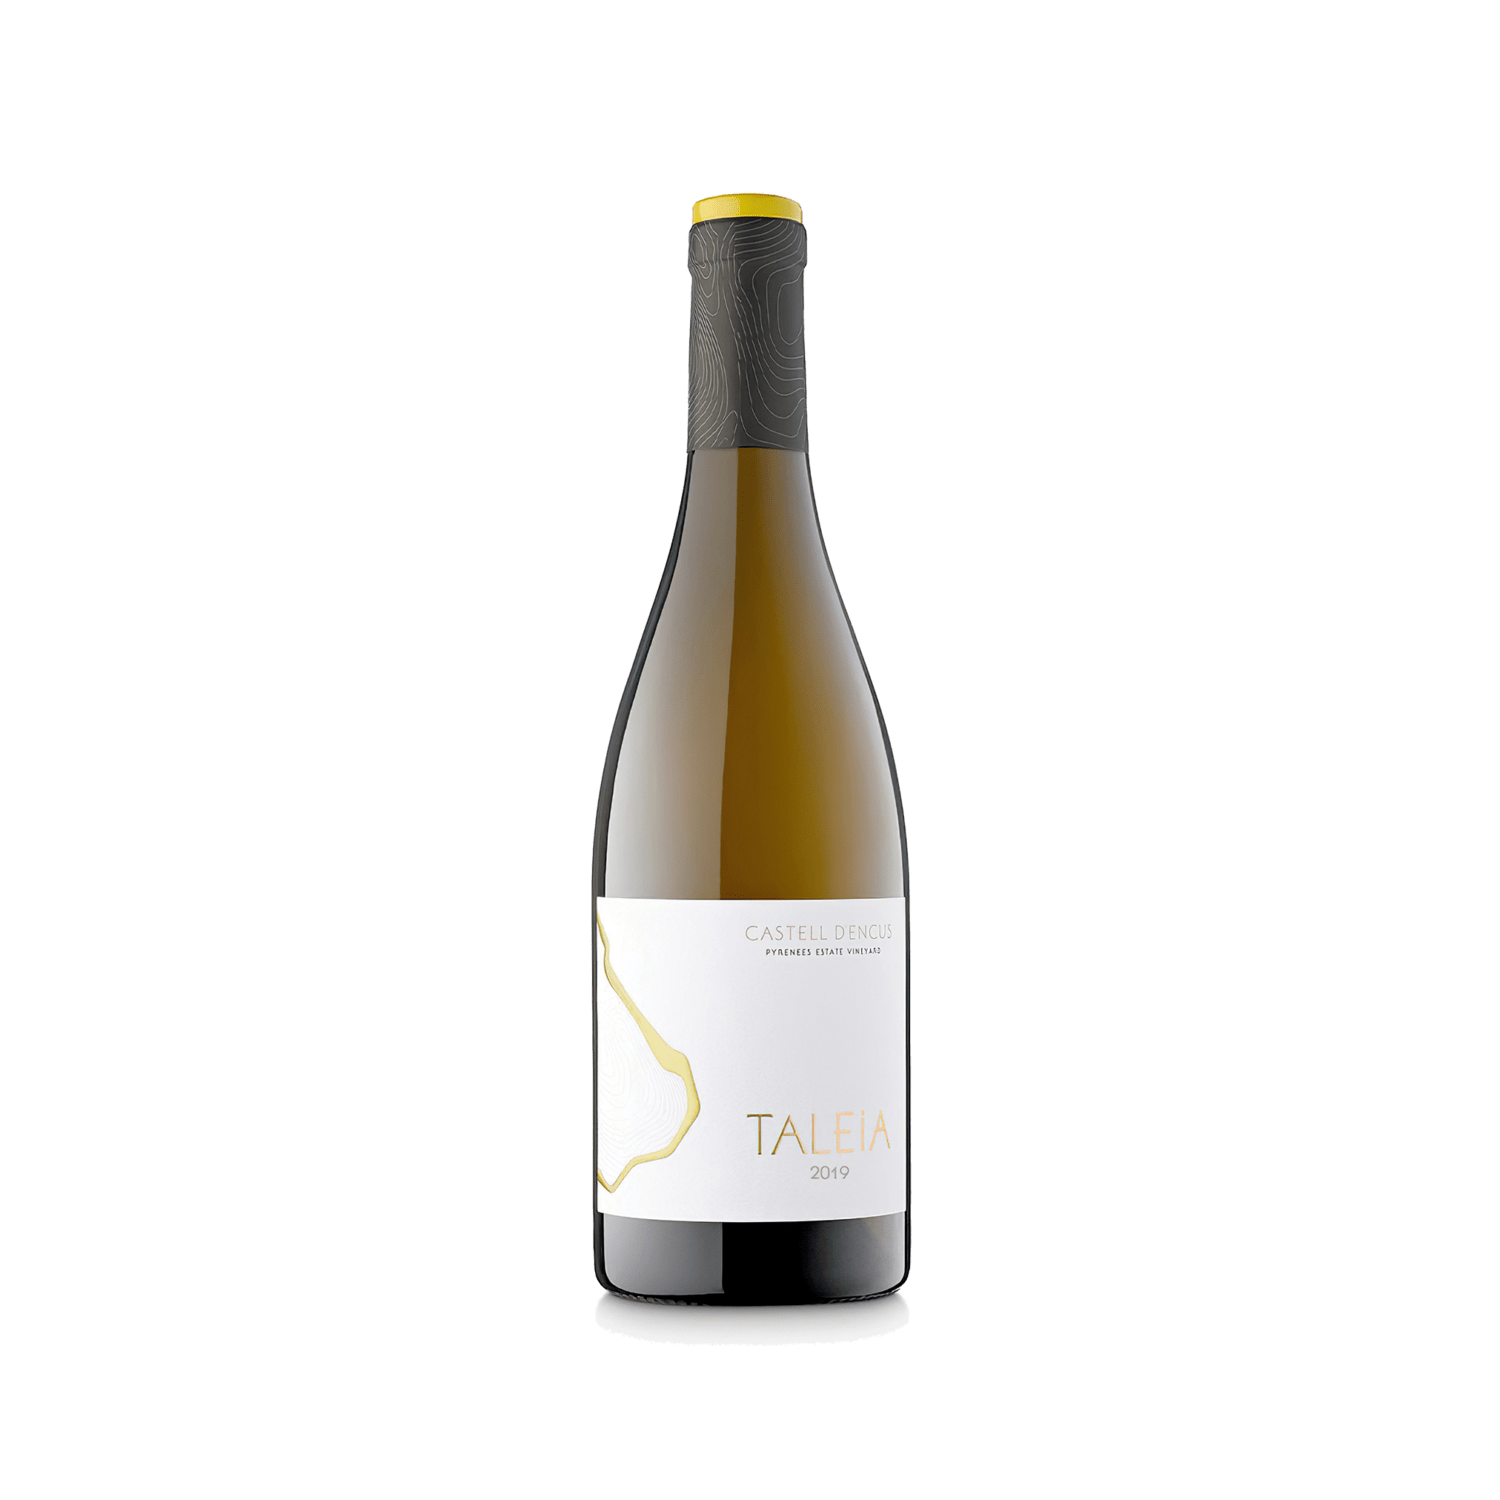 Ampolla d'estudi del vi TALEIA 2019